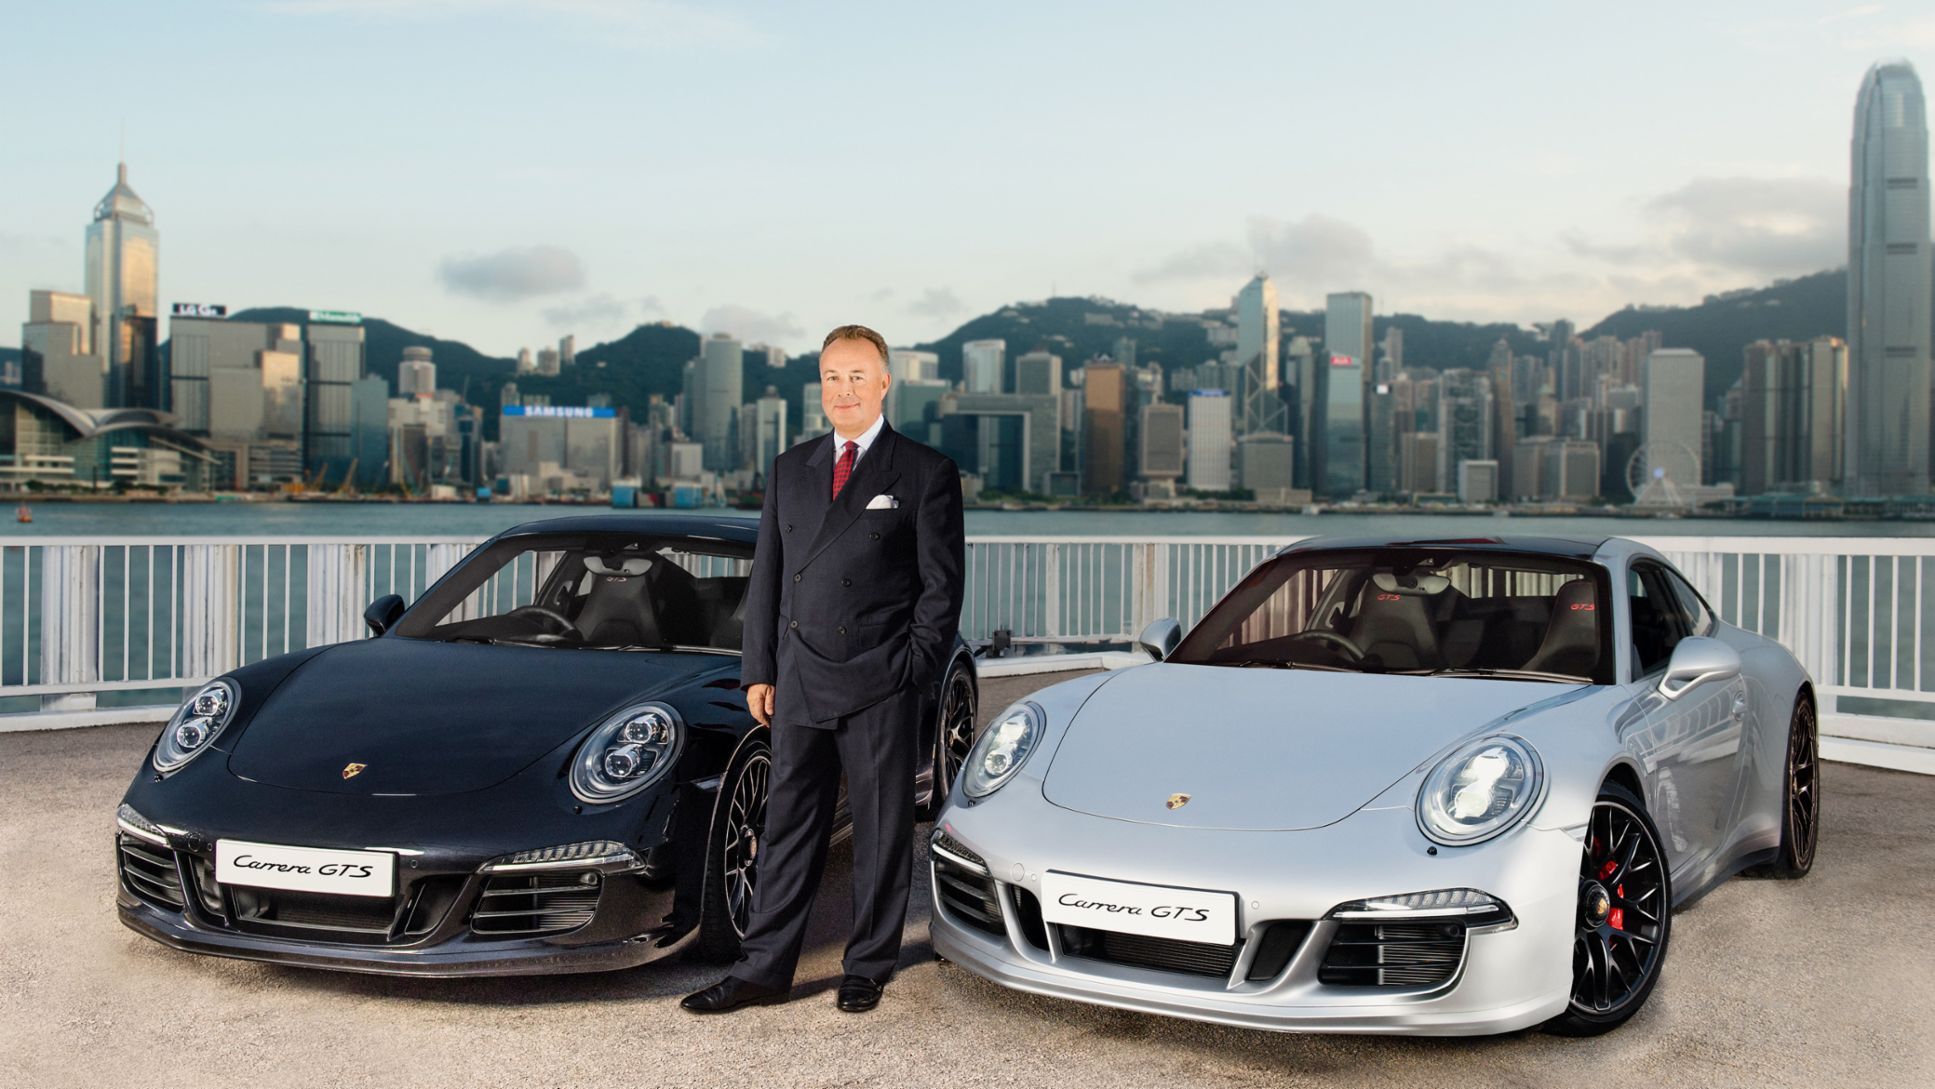 Hans Michael Jebsen, chairman of Jebsen & Co. Ltd, Skyline Hong Kong, 2015, Porsche AG